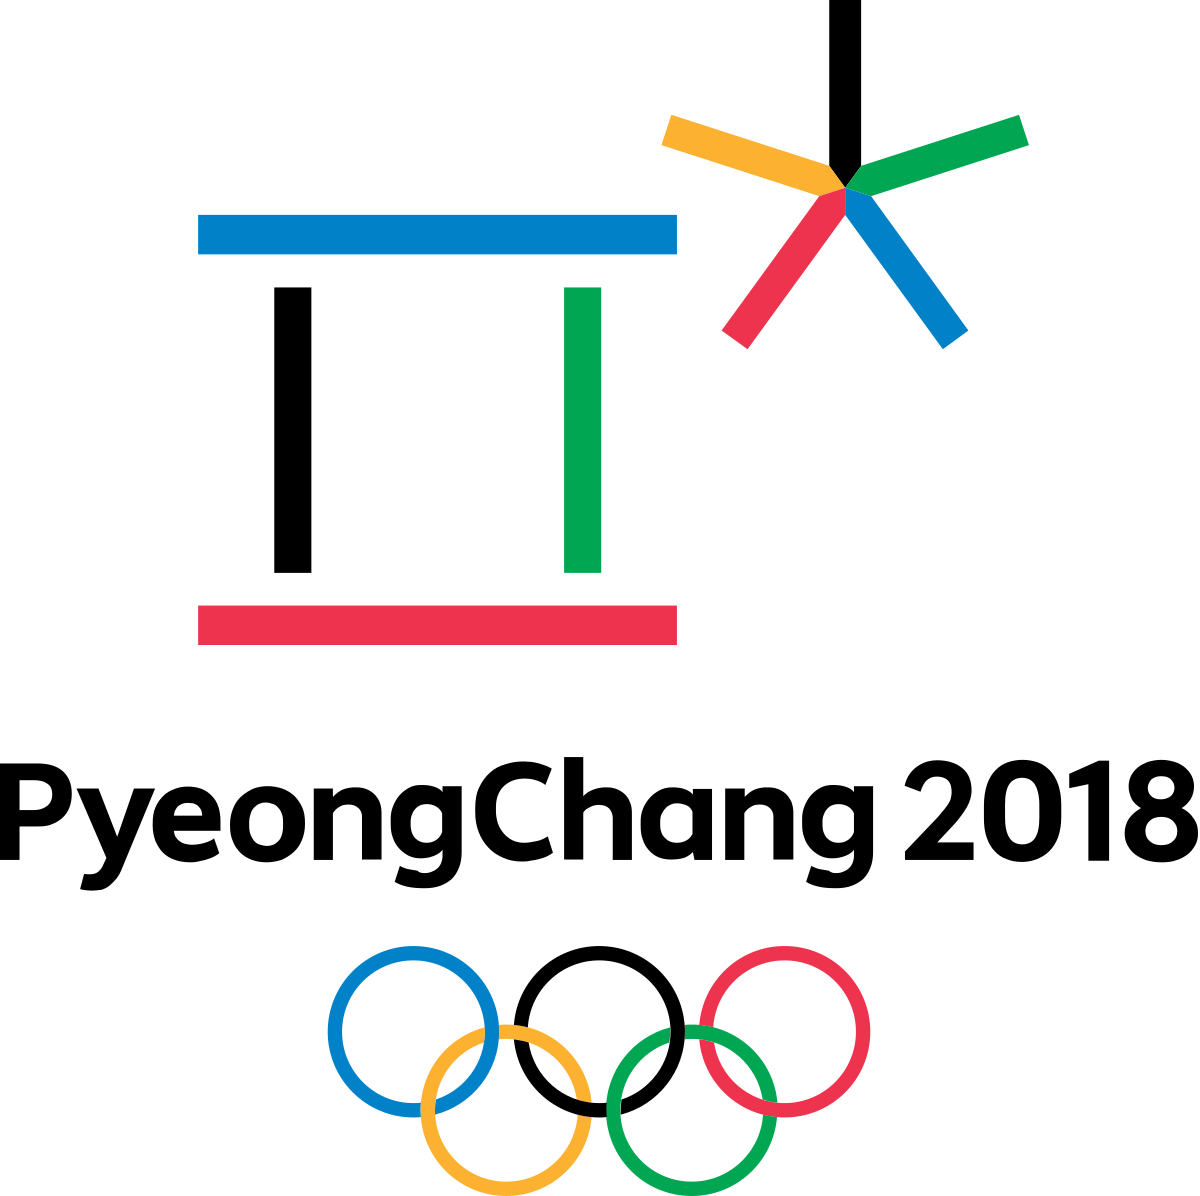 yeongChang 2018